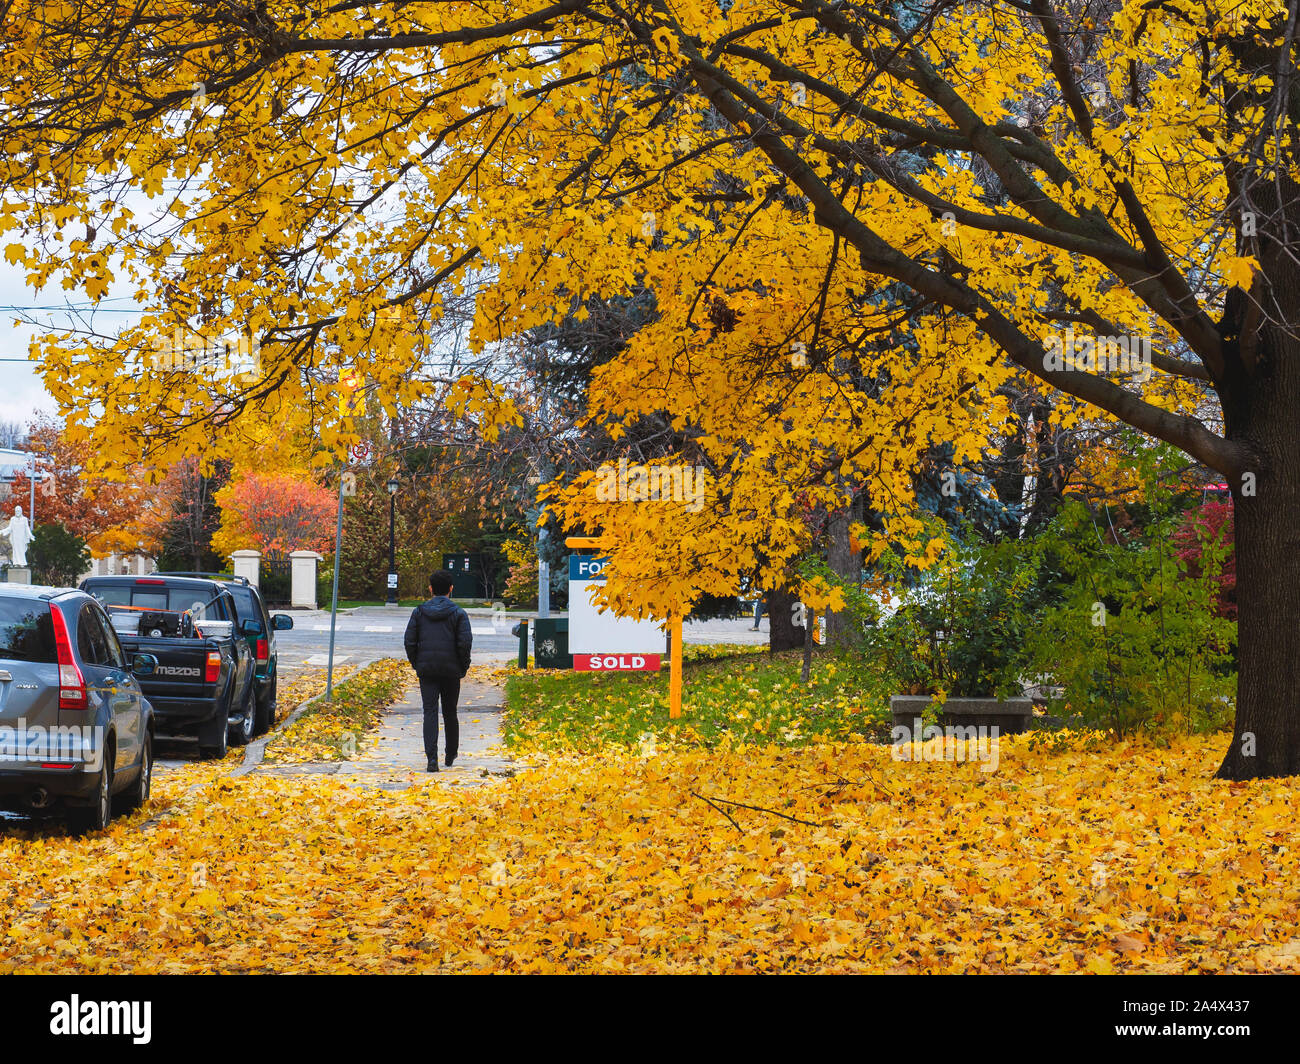 Zucker-ahorn Bäume mit gelben Blätter überstand den Bürgersteig, als Mann durch. Stockfoto